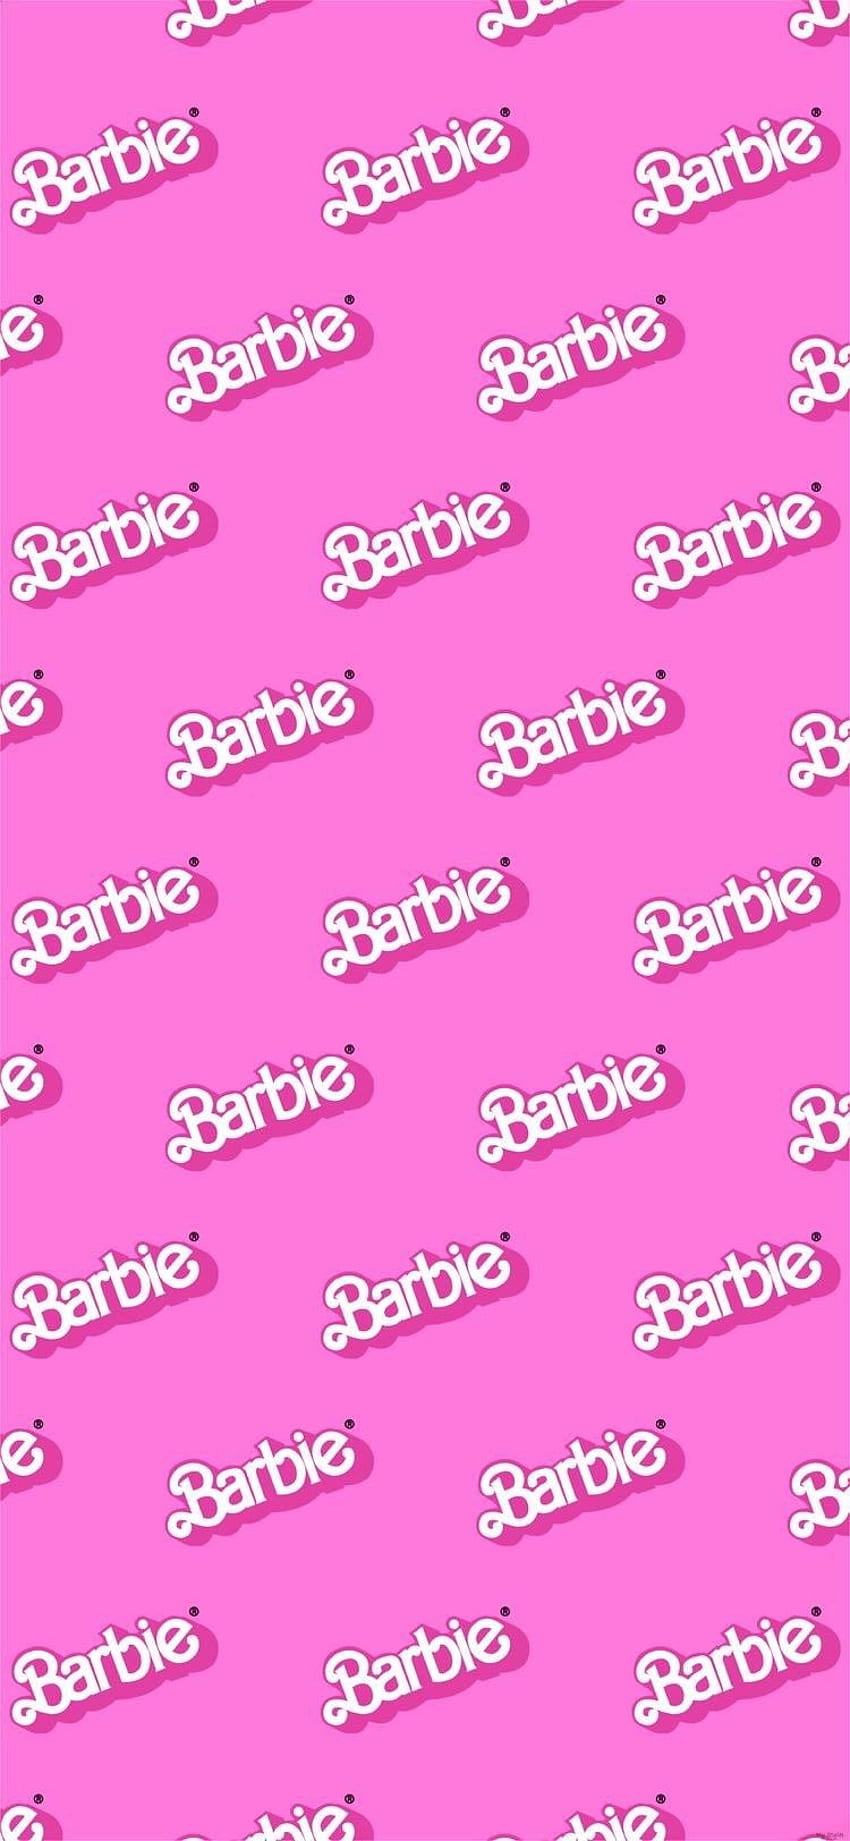 Barbie . iPhone merah muda, Merah muda, iPhone imut, Pola Barbie wallpaper ponsel HD